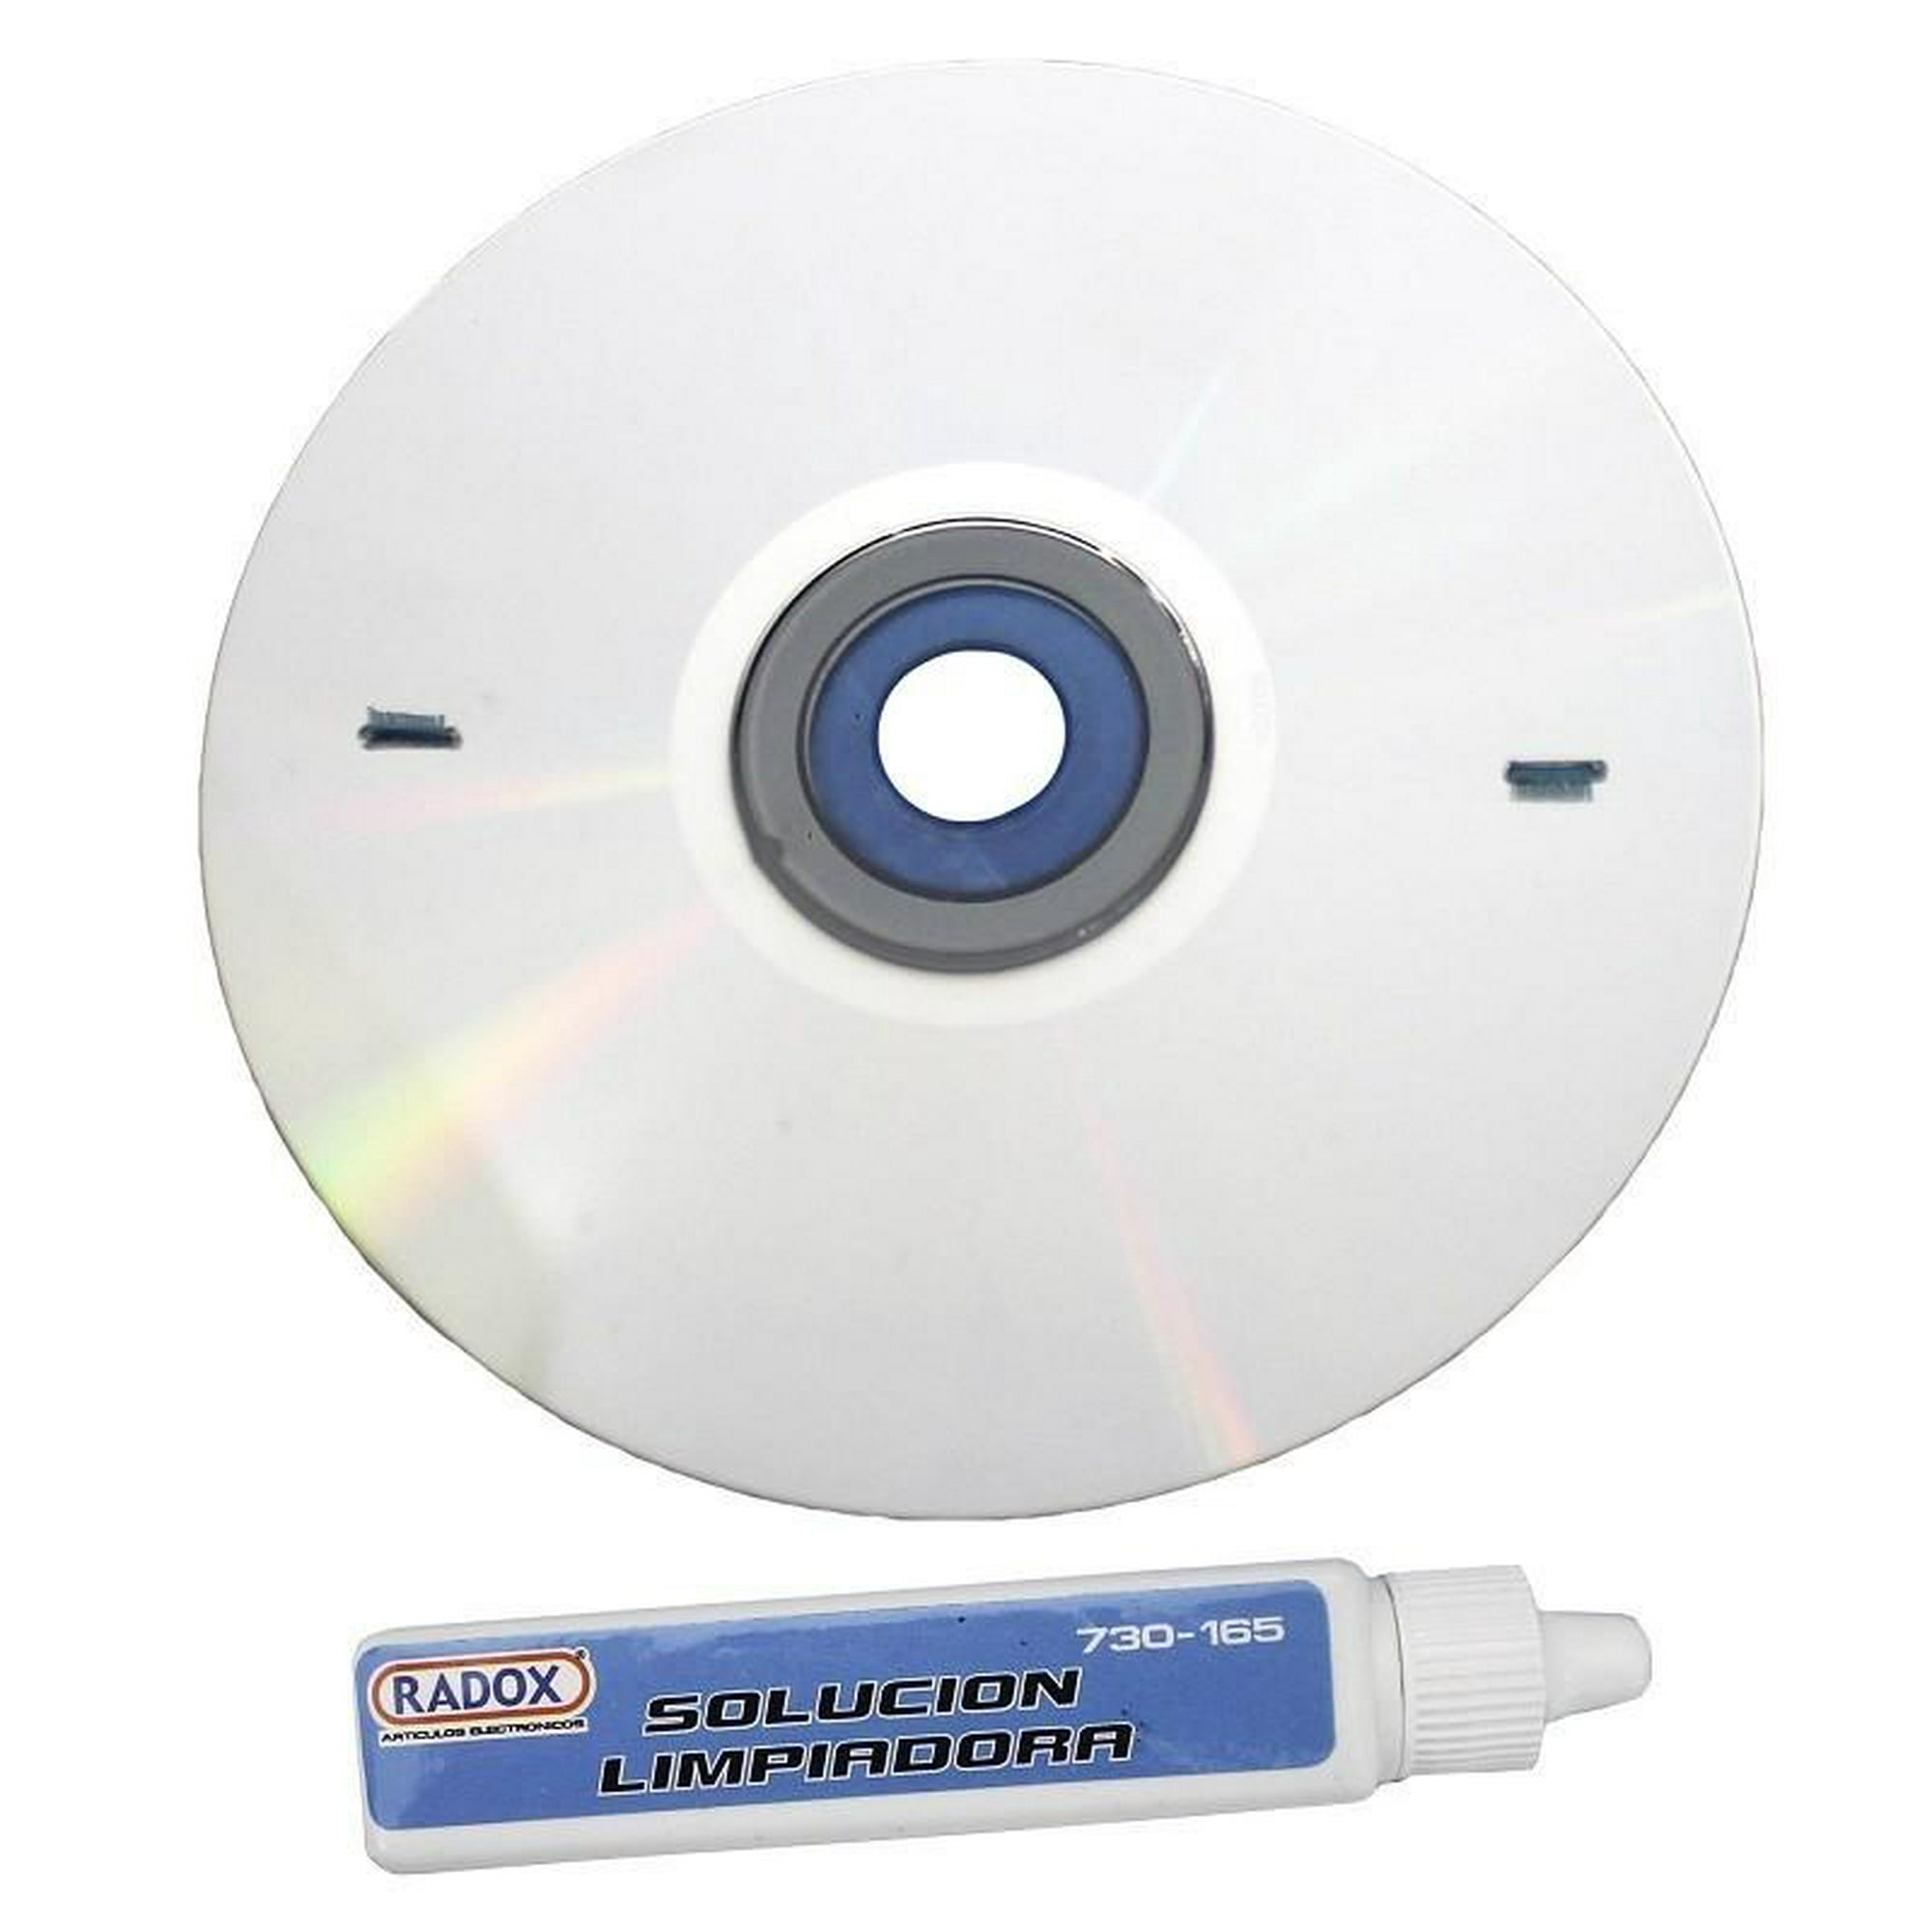 Steren México - LIM-BLU. Limpiador para lente láser de reproductores de  Blu-Ray Disc™ que mantiene limpio y en óptimas condiciones el lector de tu  reproductor. Tus películas siempre se verán bien, además